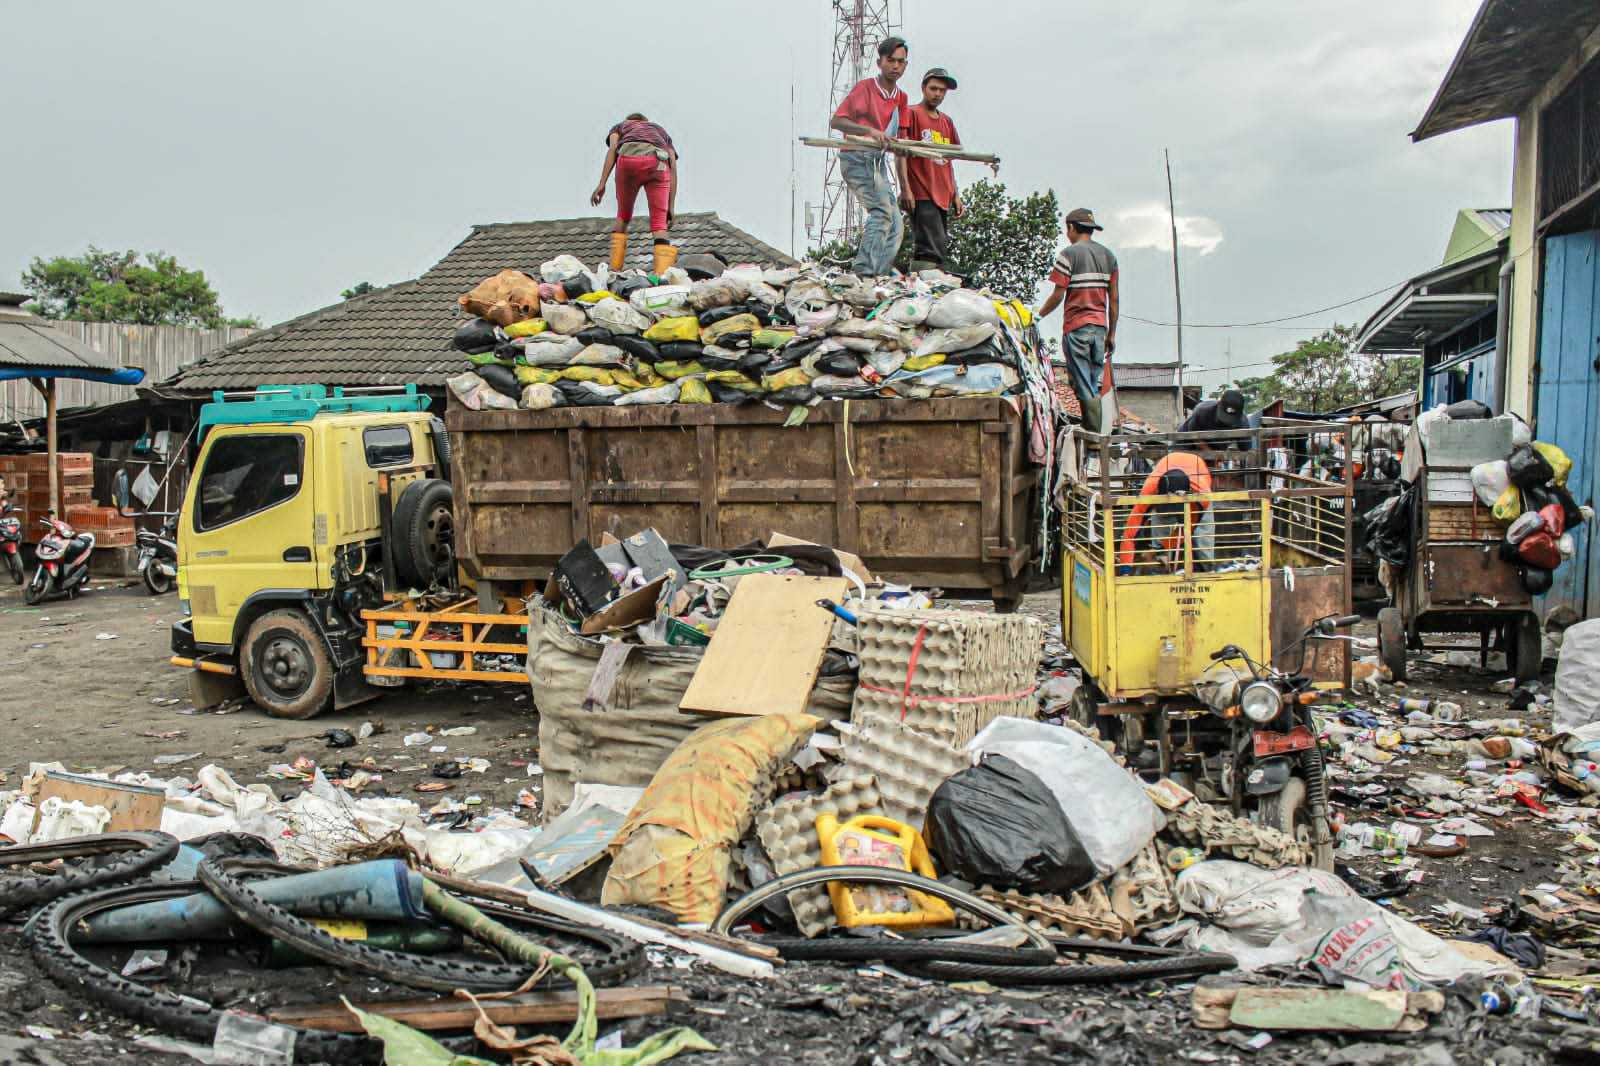 Timbulan Sampah Menggunung Dimana-mana, DLH Jabar Sebut Masalah Ini Jadi PR Bersama